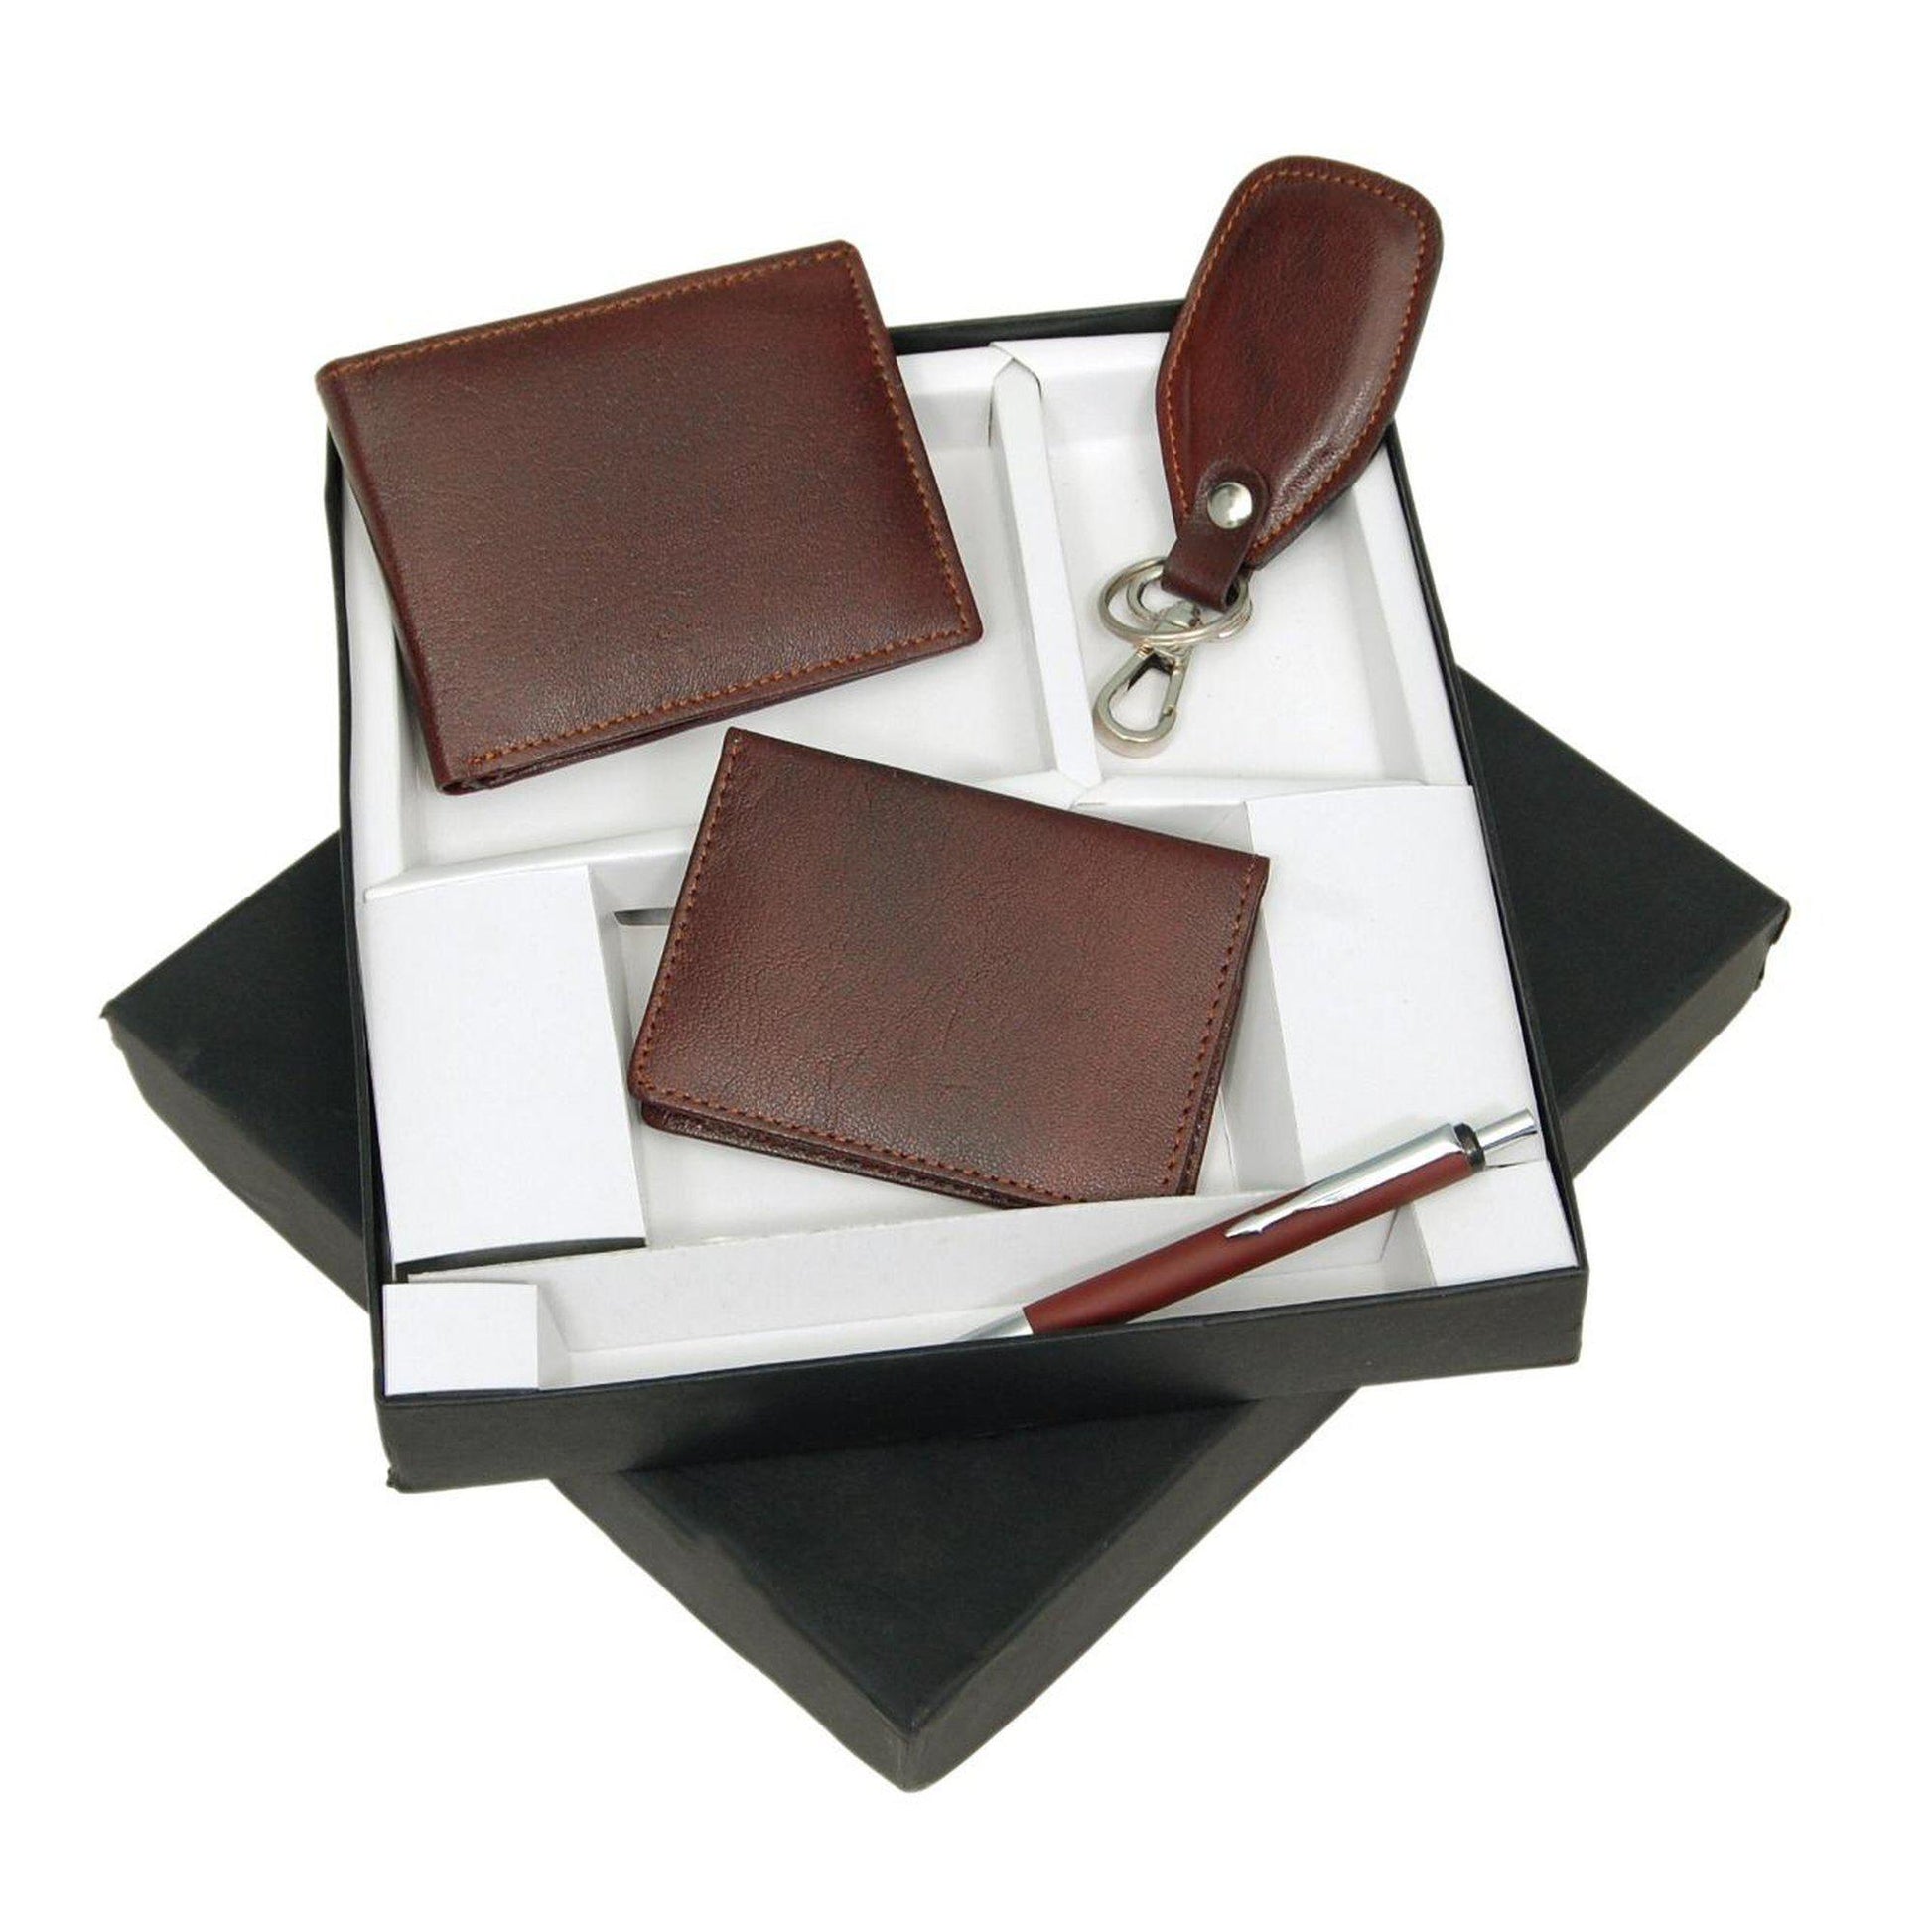 Leather Gifting Set for Men-Gift Set-ONESKYSHOP